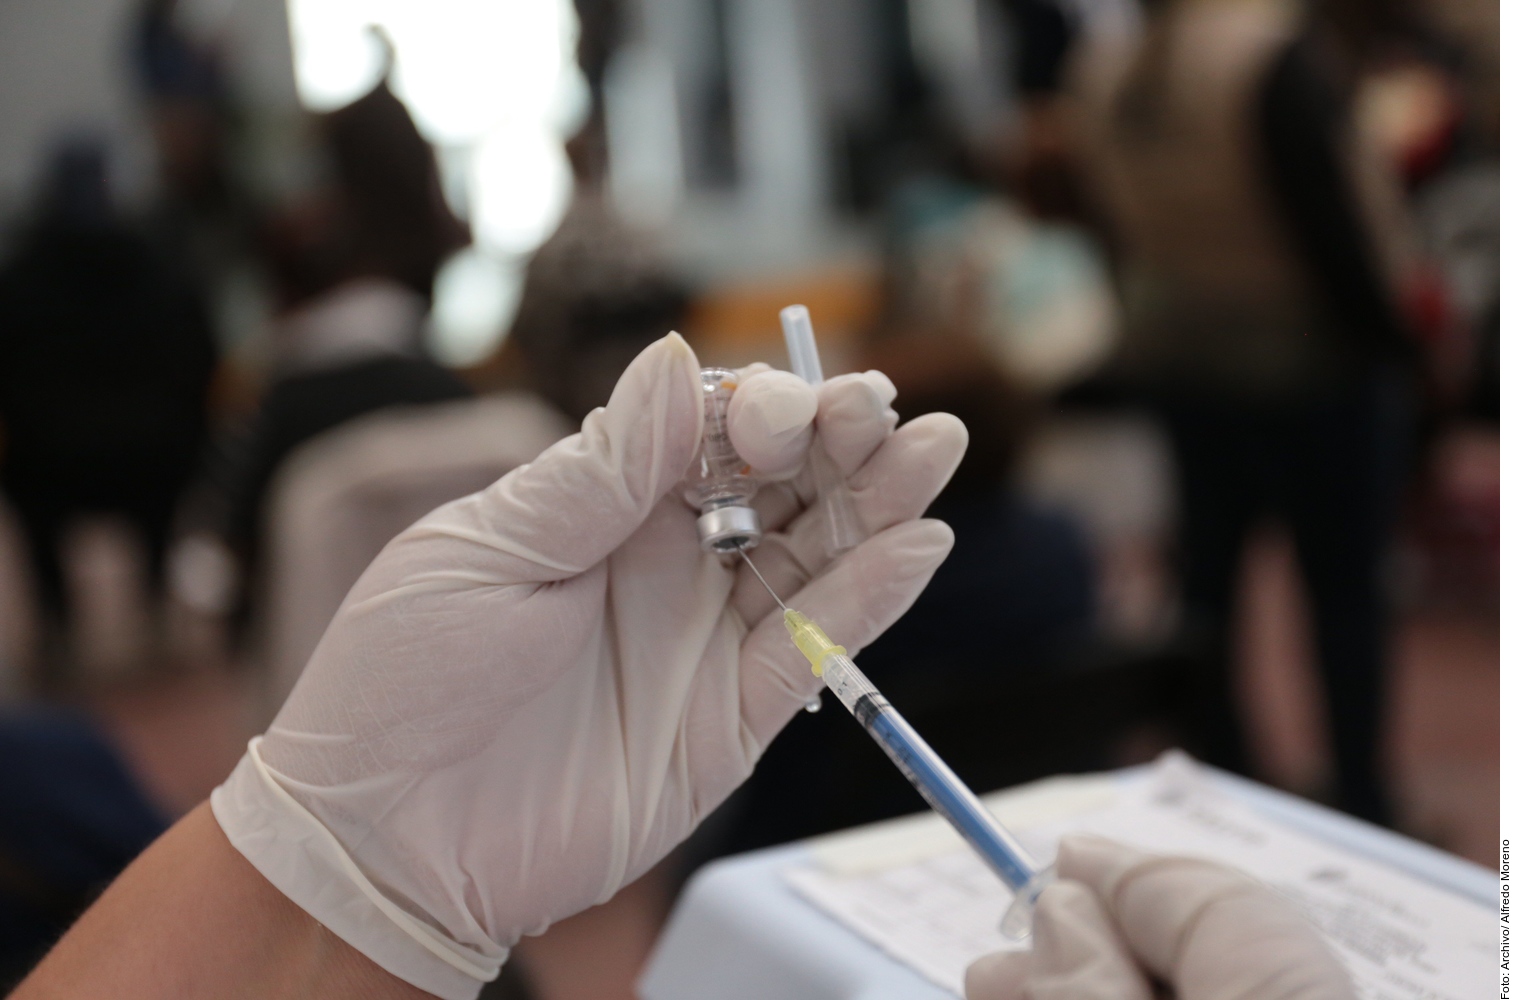 Preparación de vacuna contra COVID-19